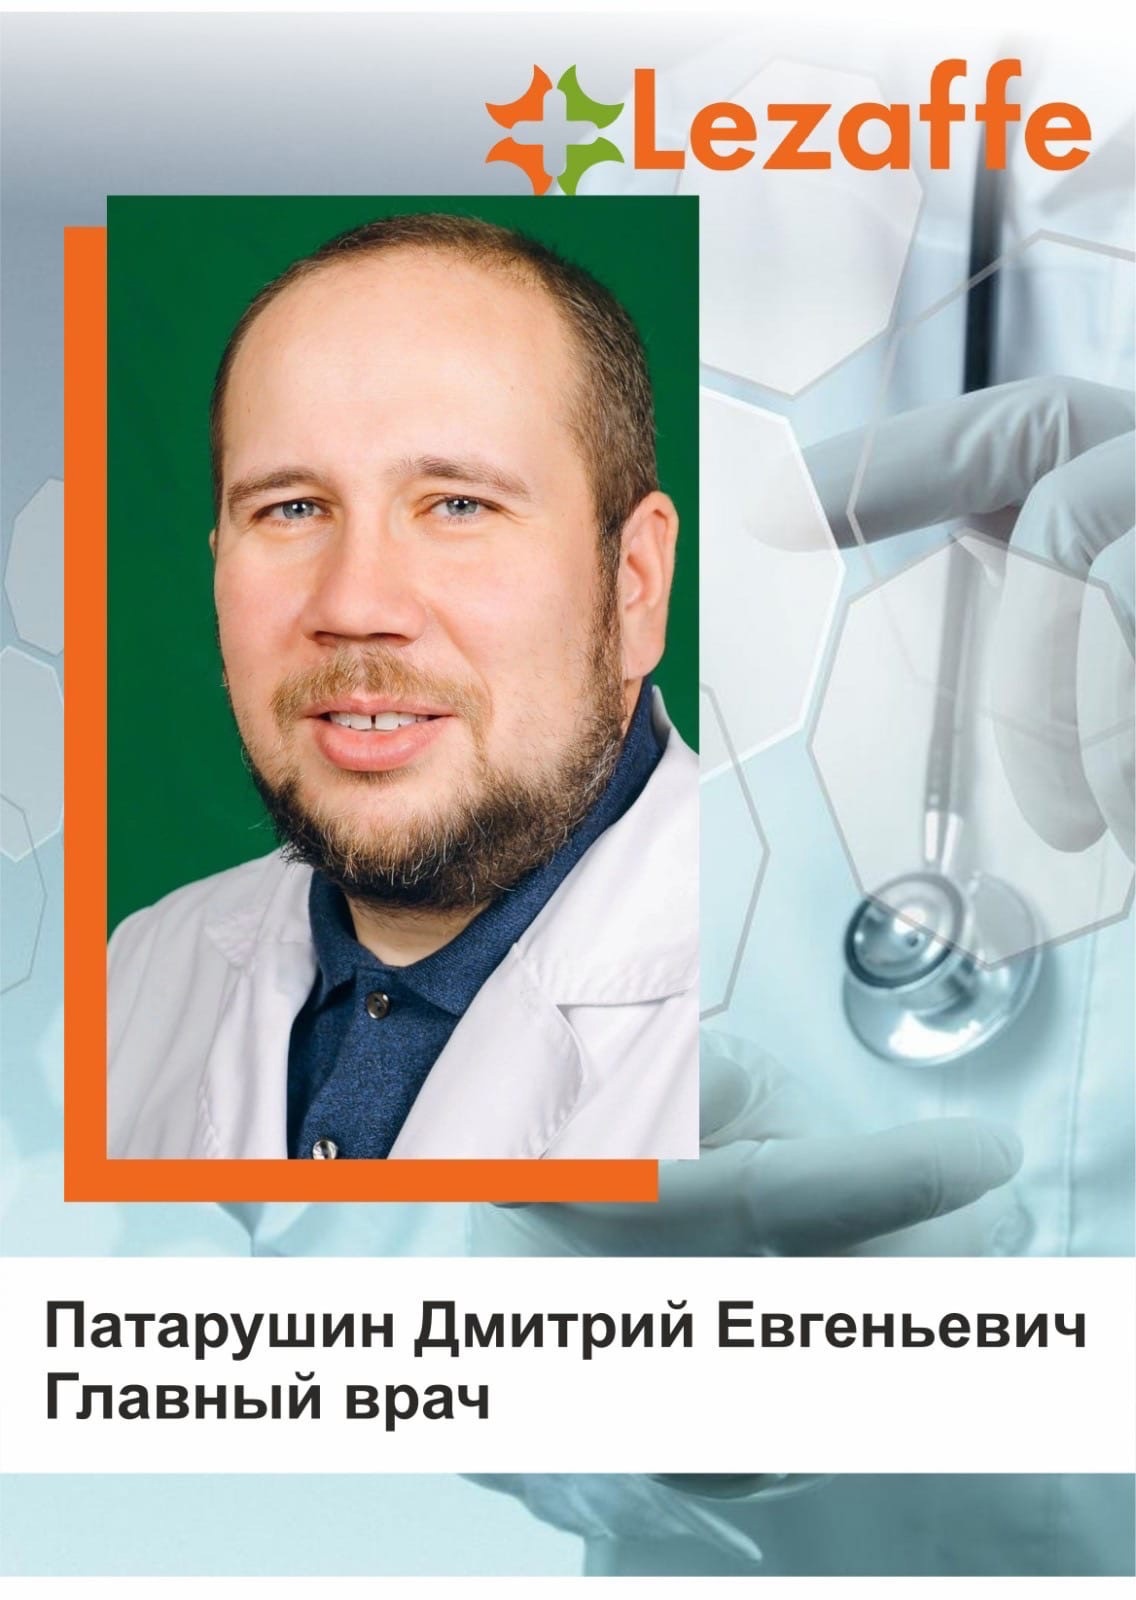 Патарушин Дмитрий Евгеньевич - Главный врач в клинике Lezaffe г. Нягань